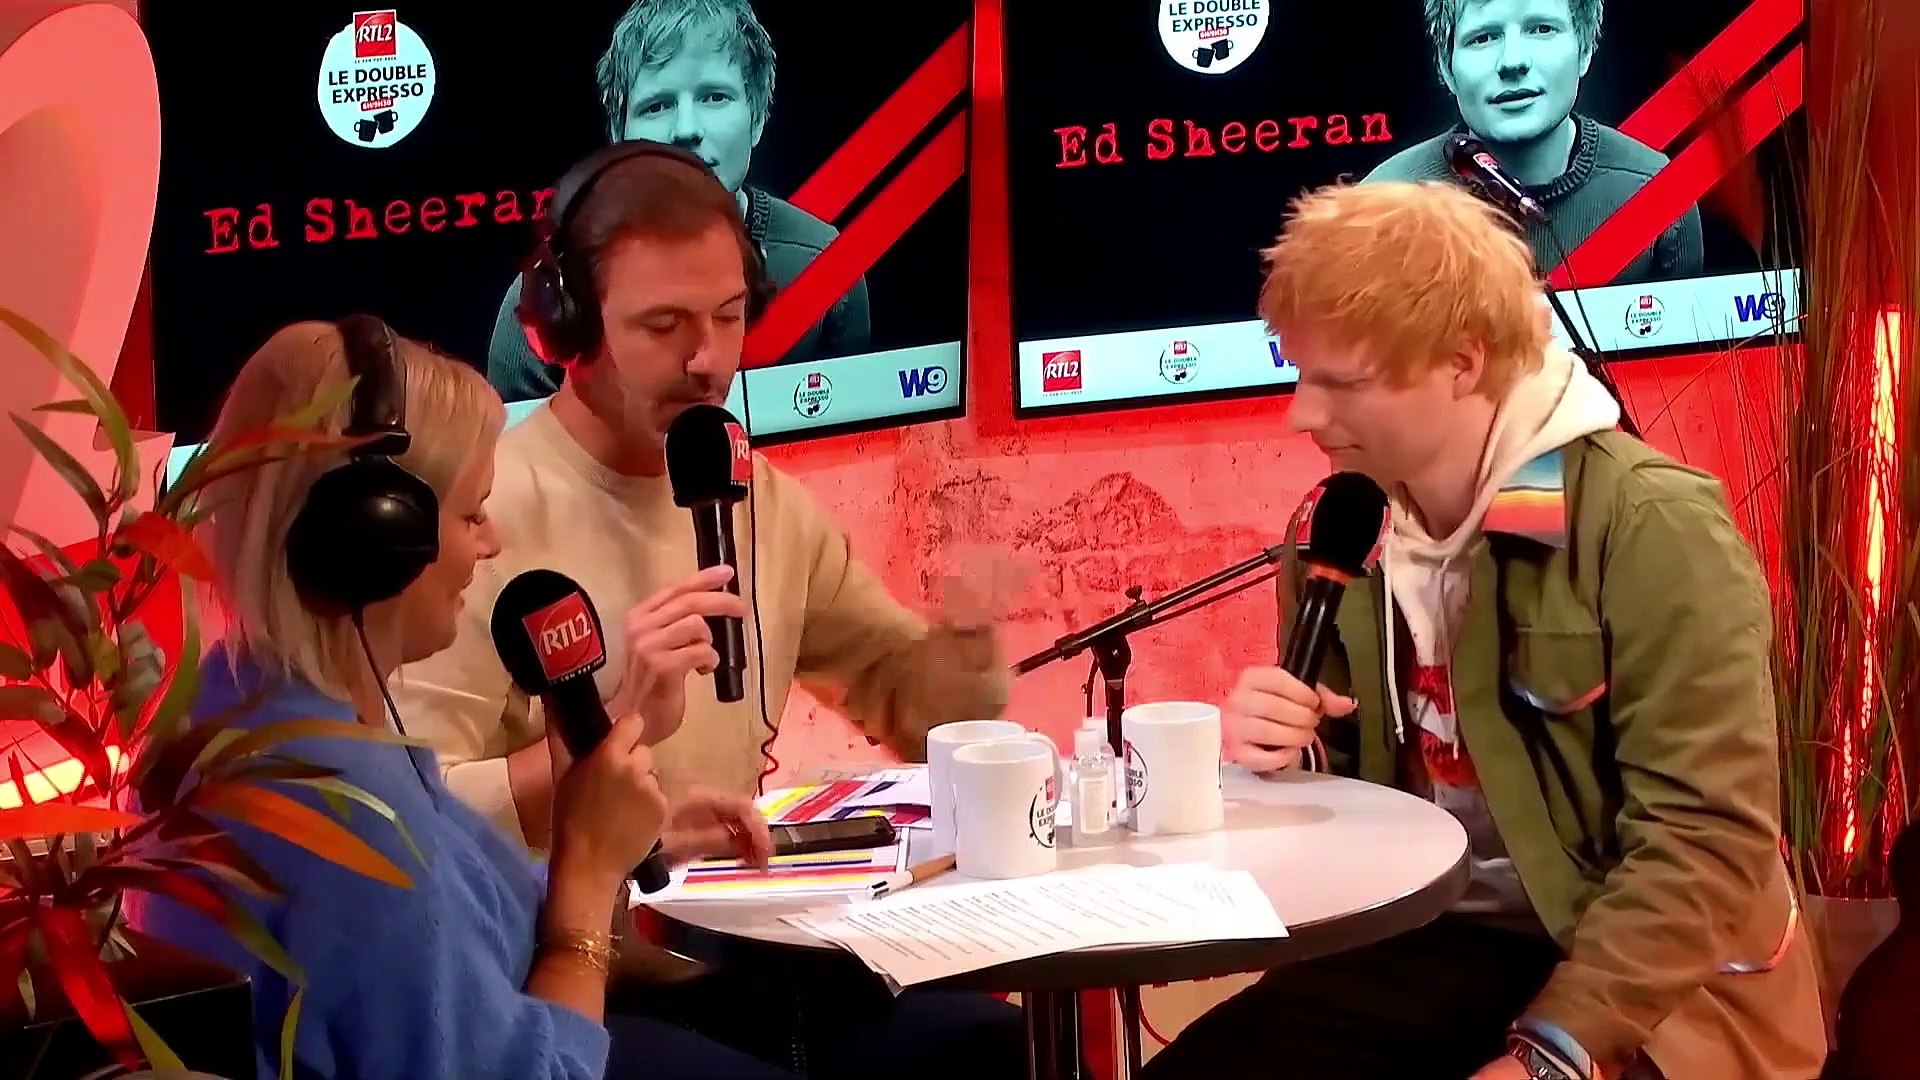 PÉPITE - Ed Sheeran en live et en interview dans Le Double Expresso RTL2  (08/10/21) - Vidéo Dailymotion